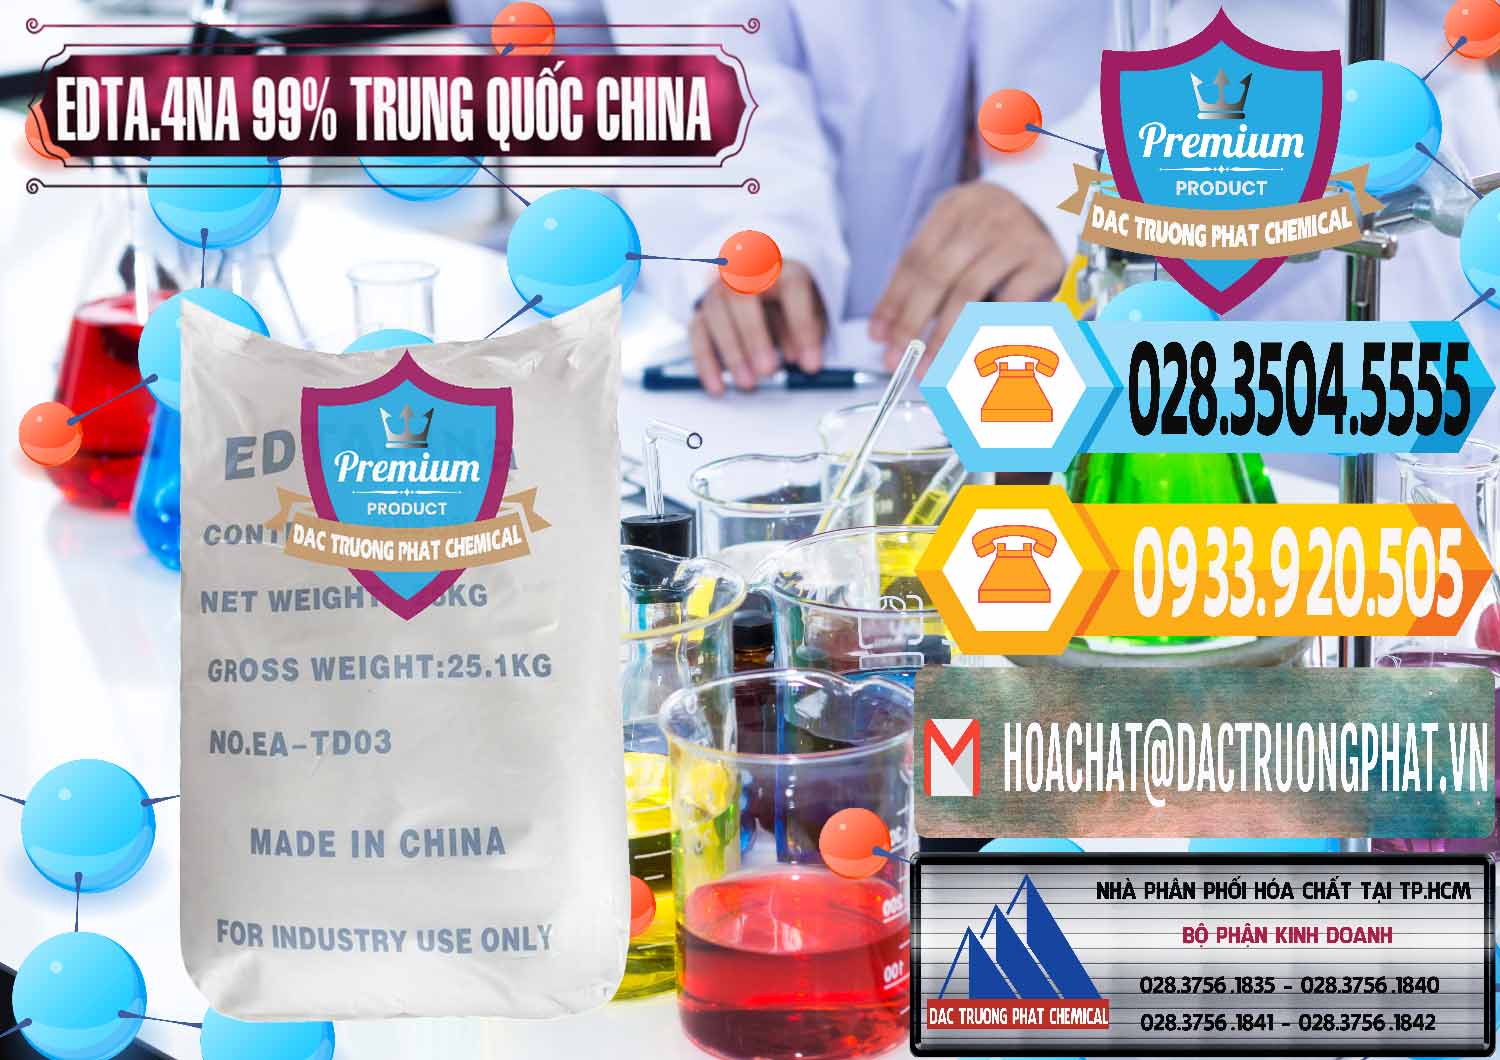 Cty chuyên bán - cung cấp EDTA.4NA - EDTA Muối 99% Trung Quốc China - 0292 - Cty chuyên kinh doanh ( cung cấp ) hóa chất tại TP.HCM - hoachattayrua.net